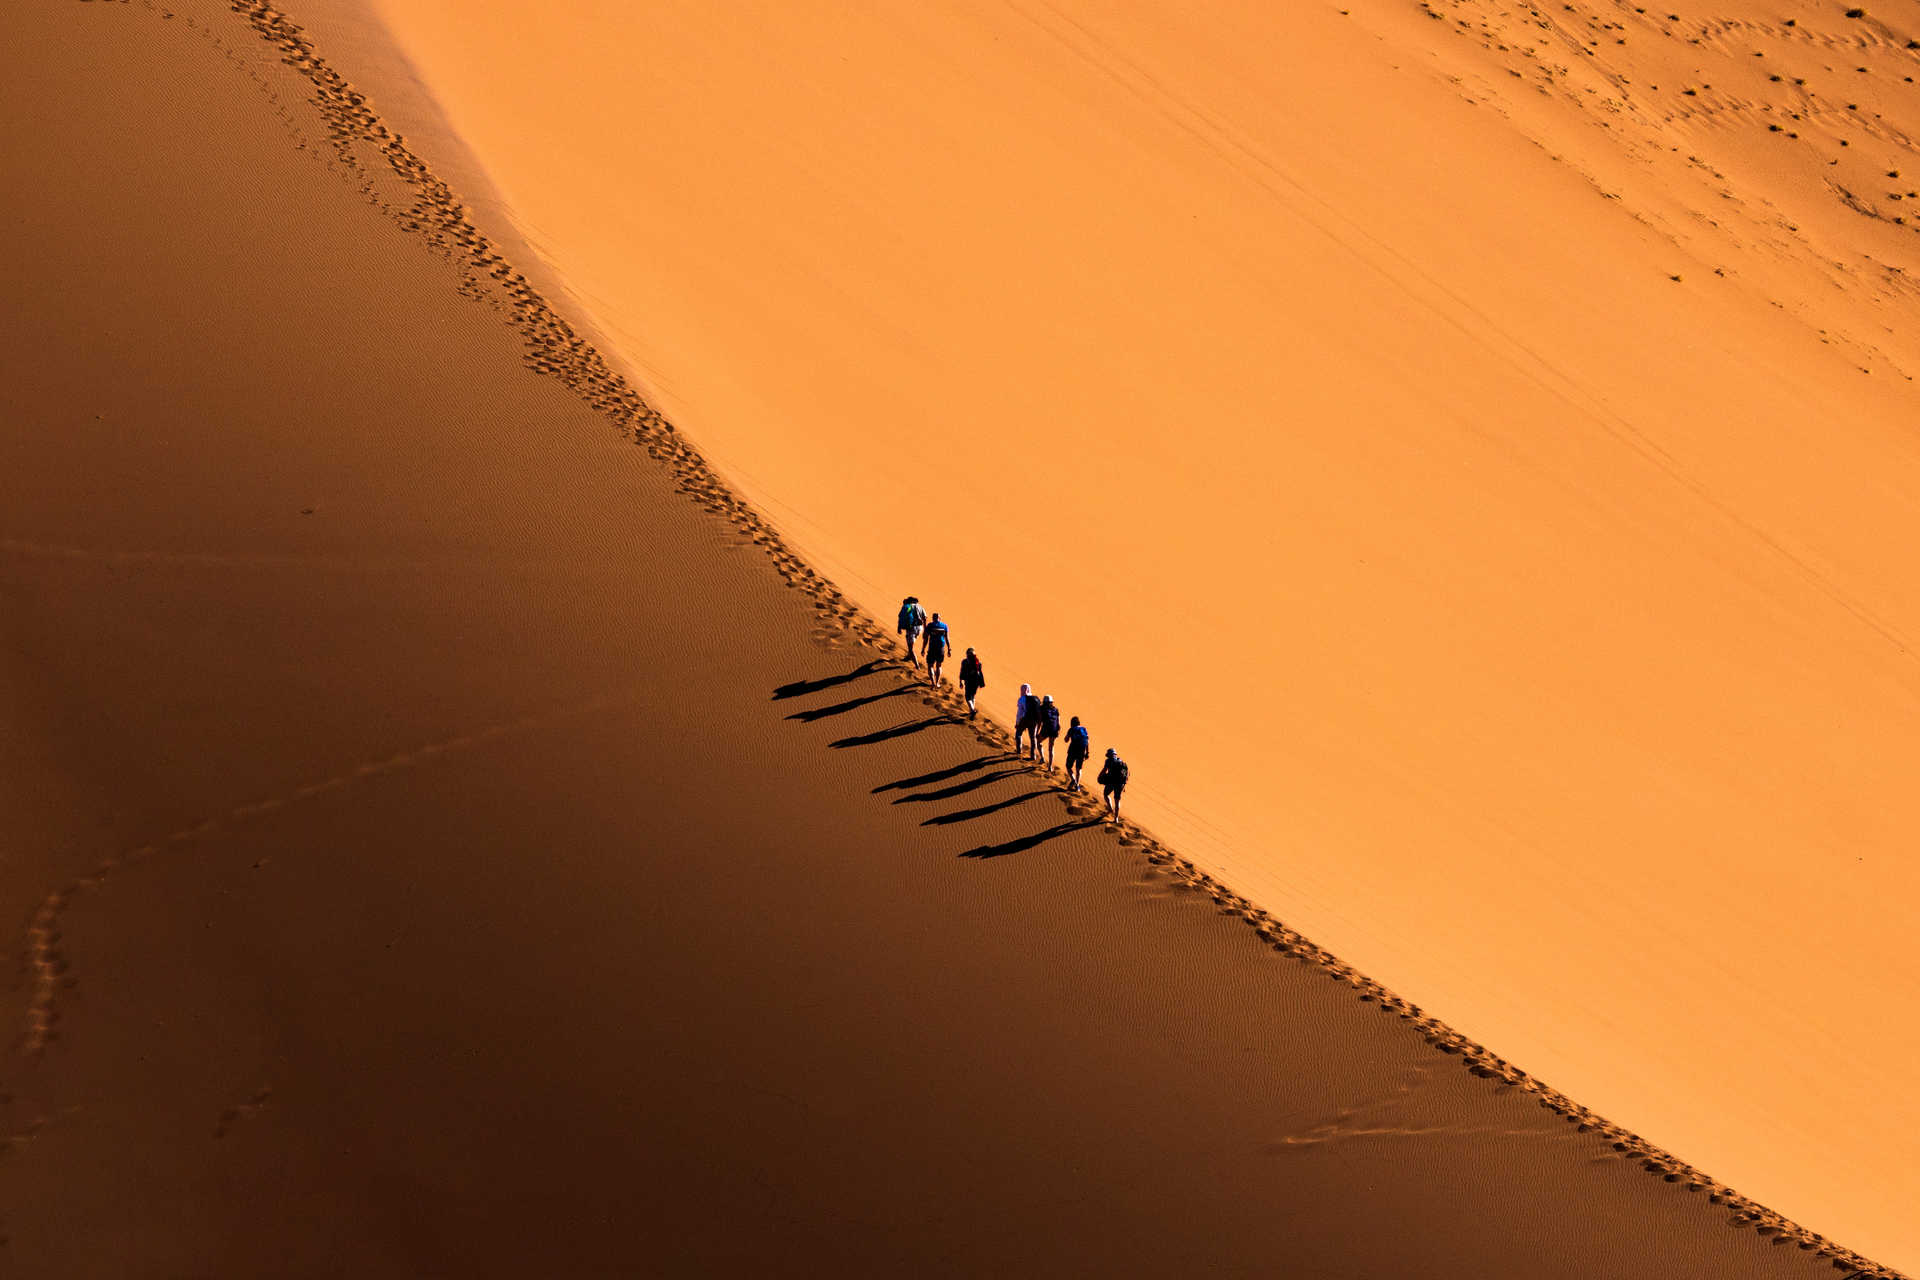 Trekkeurs sur une dune dans le désert en Mauritanie